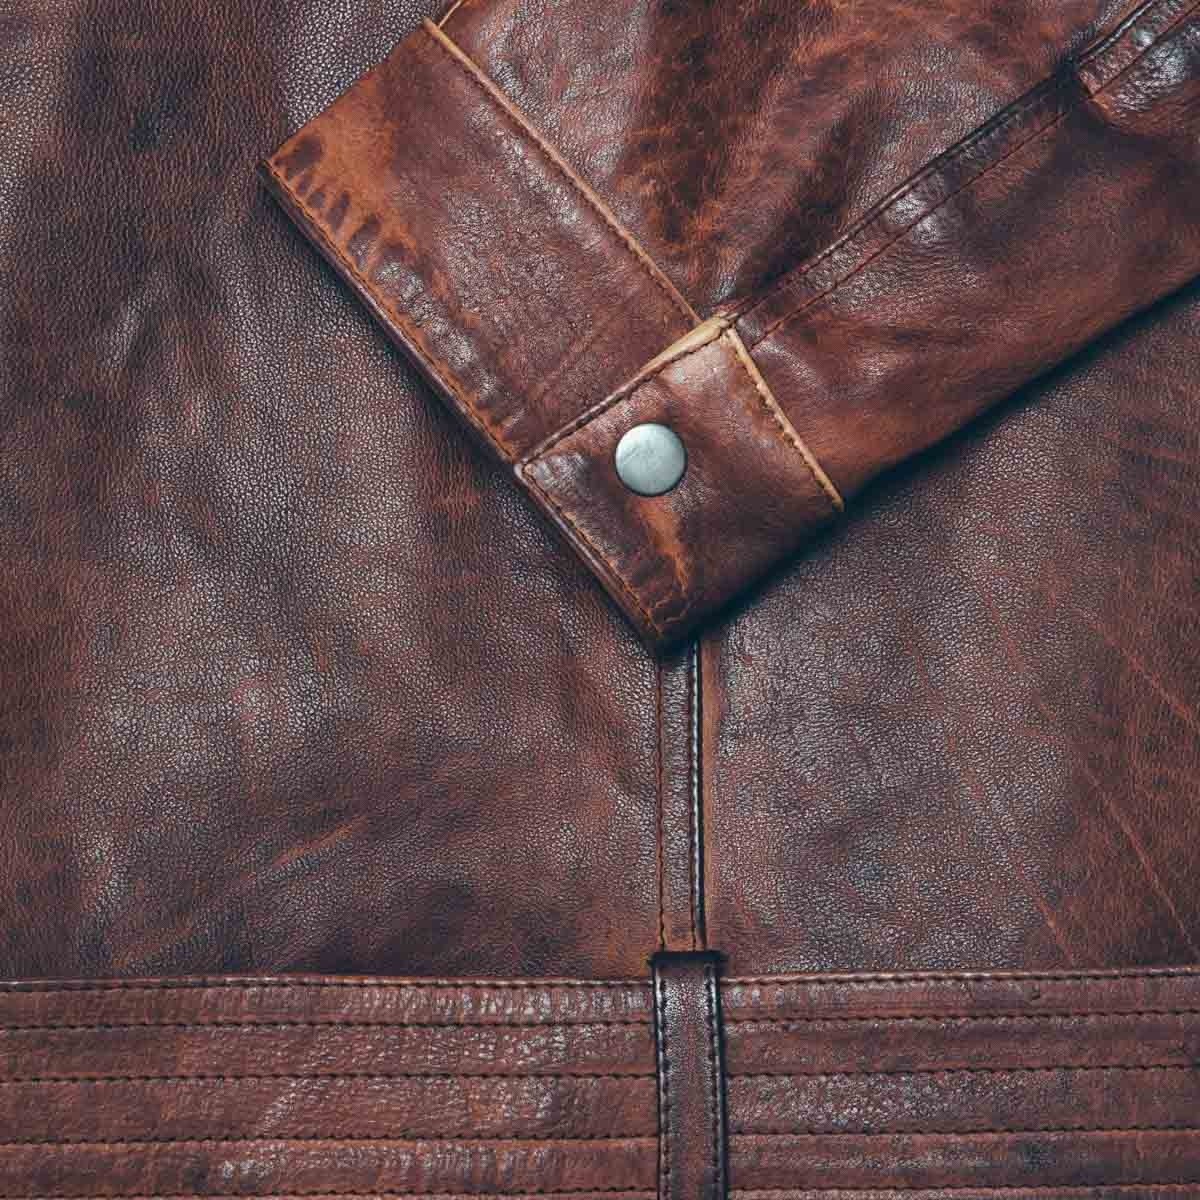 blouson-en-cuir-marron-detail-manche